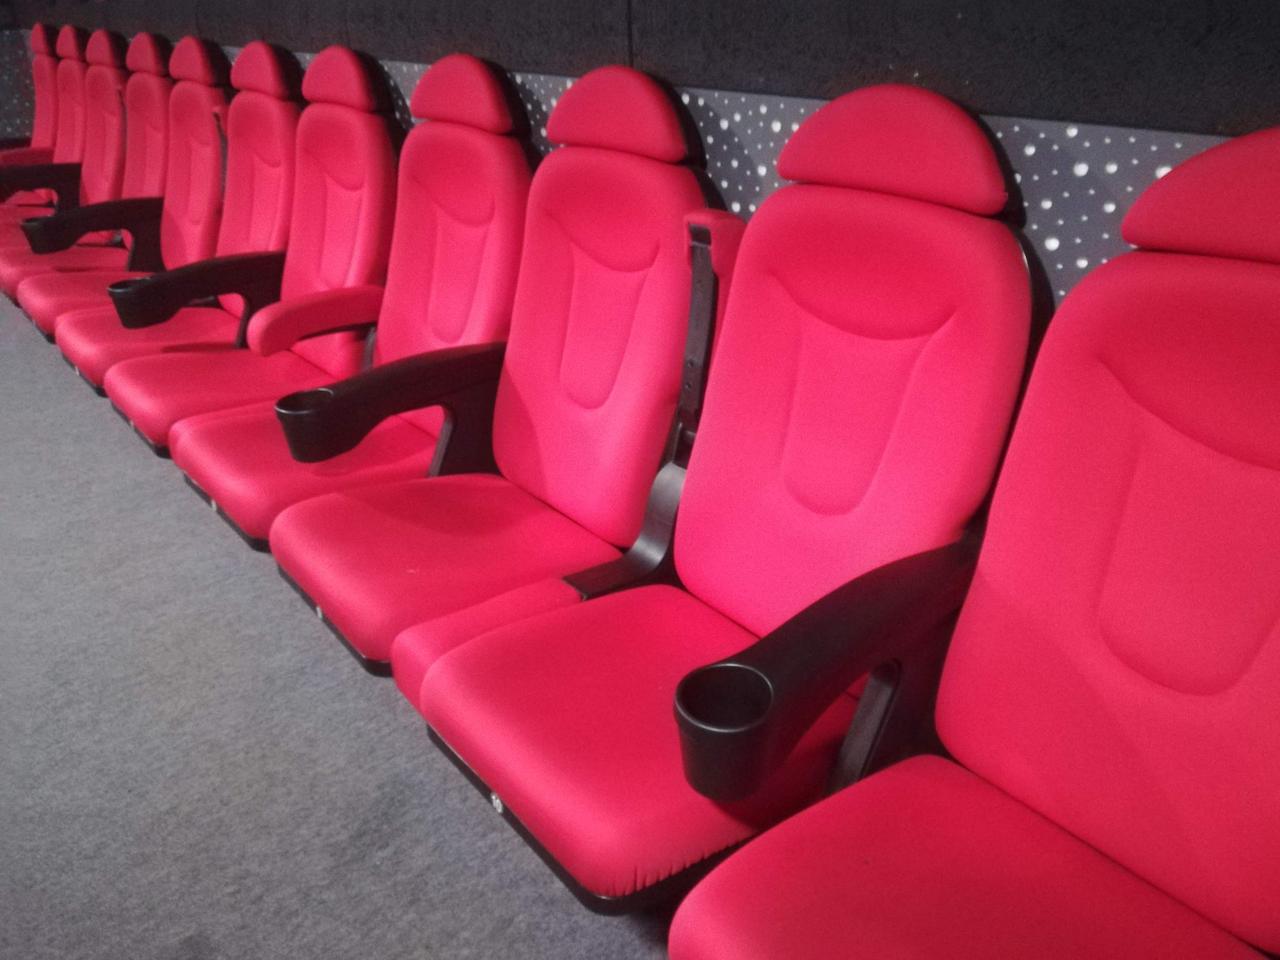 Кресло для кинотеатра Love seat -места для поцелуев